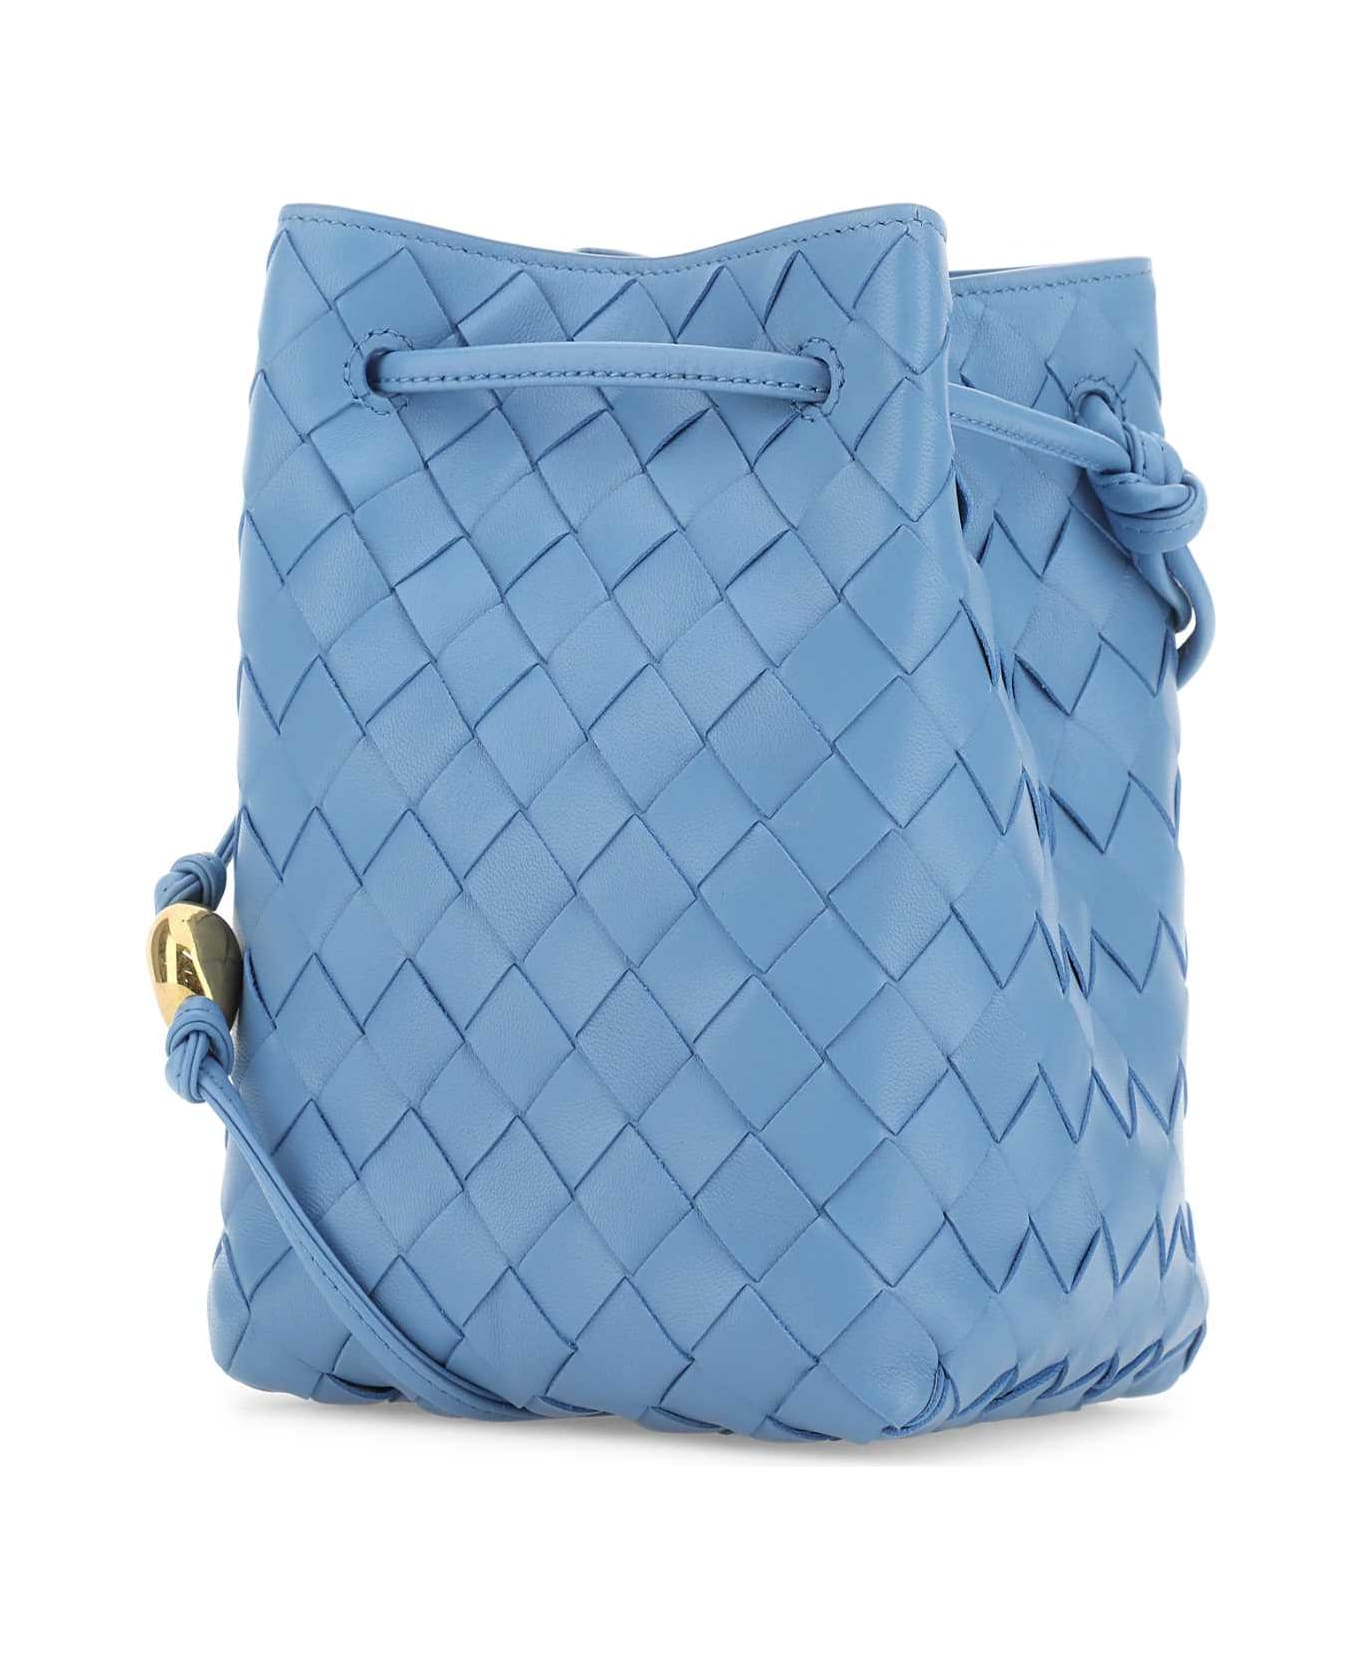 Bottega Veneta Cerulean Blue Leather Bucket Bag - AZZURRO